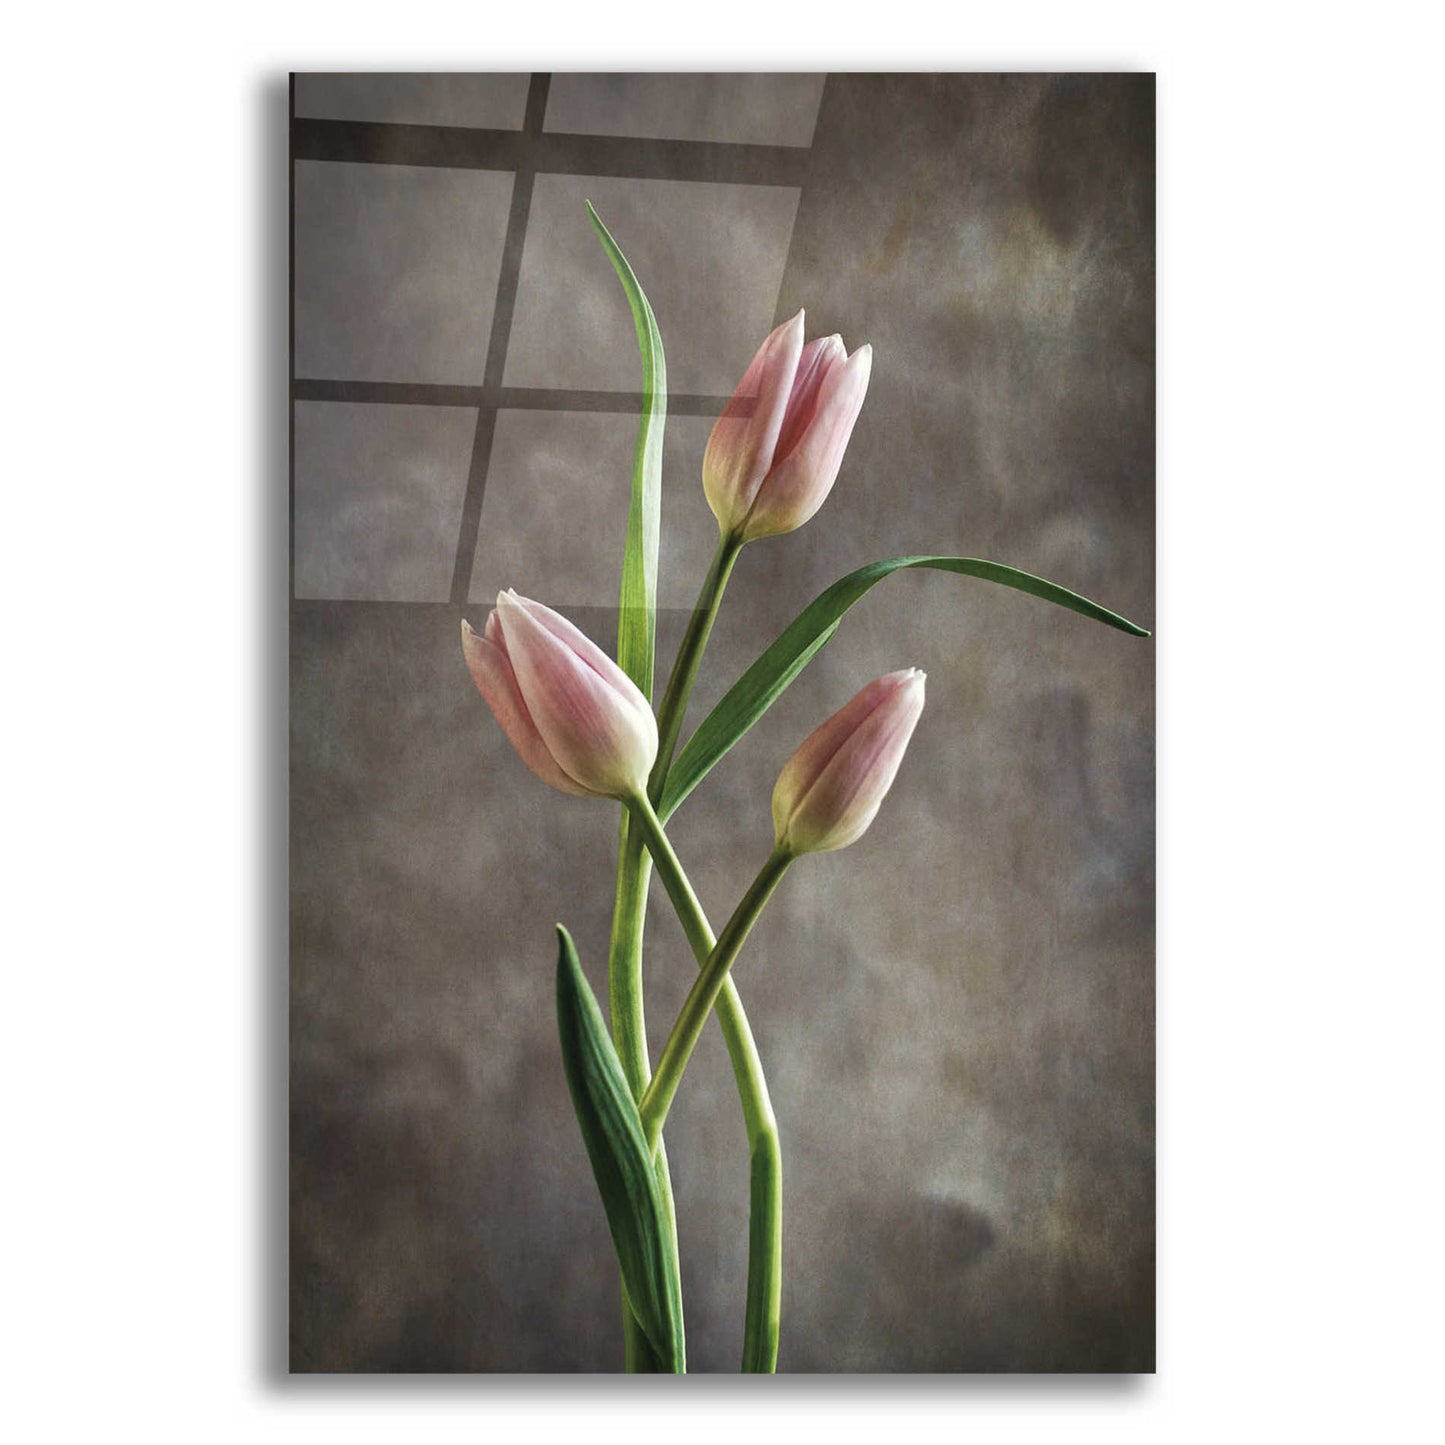 Epic Art 'Spring Tulips VII' by Debra Van Swearingen, Acrylic Glass Wall Art,12x18x1.1x0,18x26x1.1x0,26x40x1.74x0,40x60x1.74x0